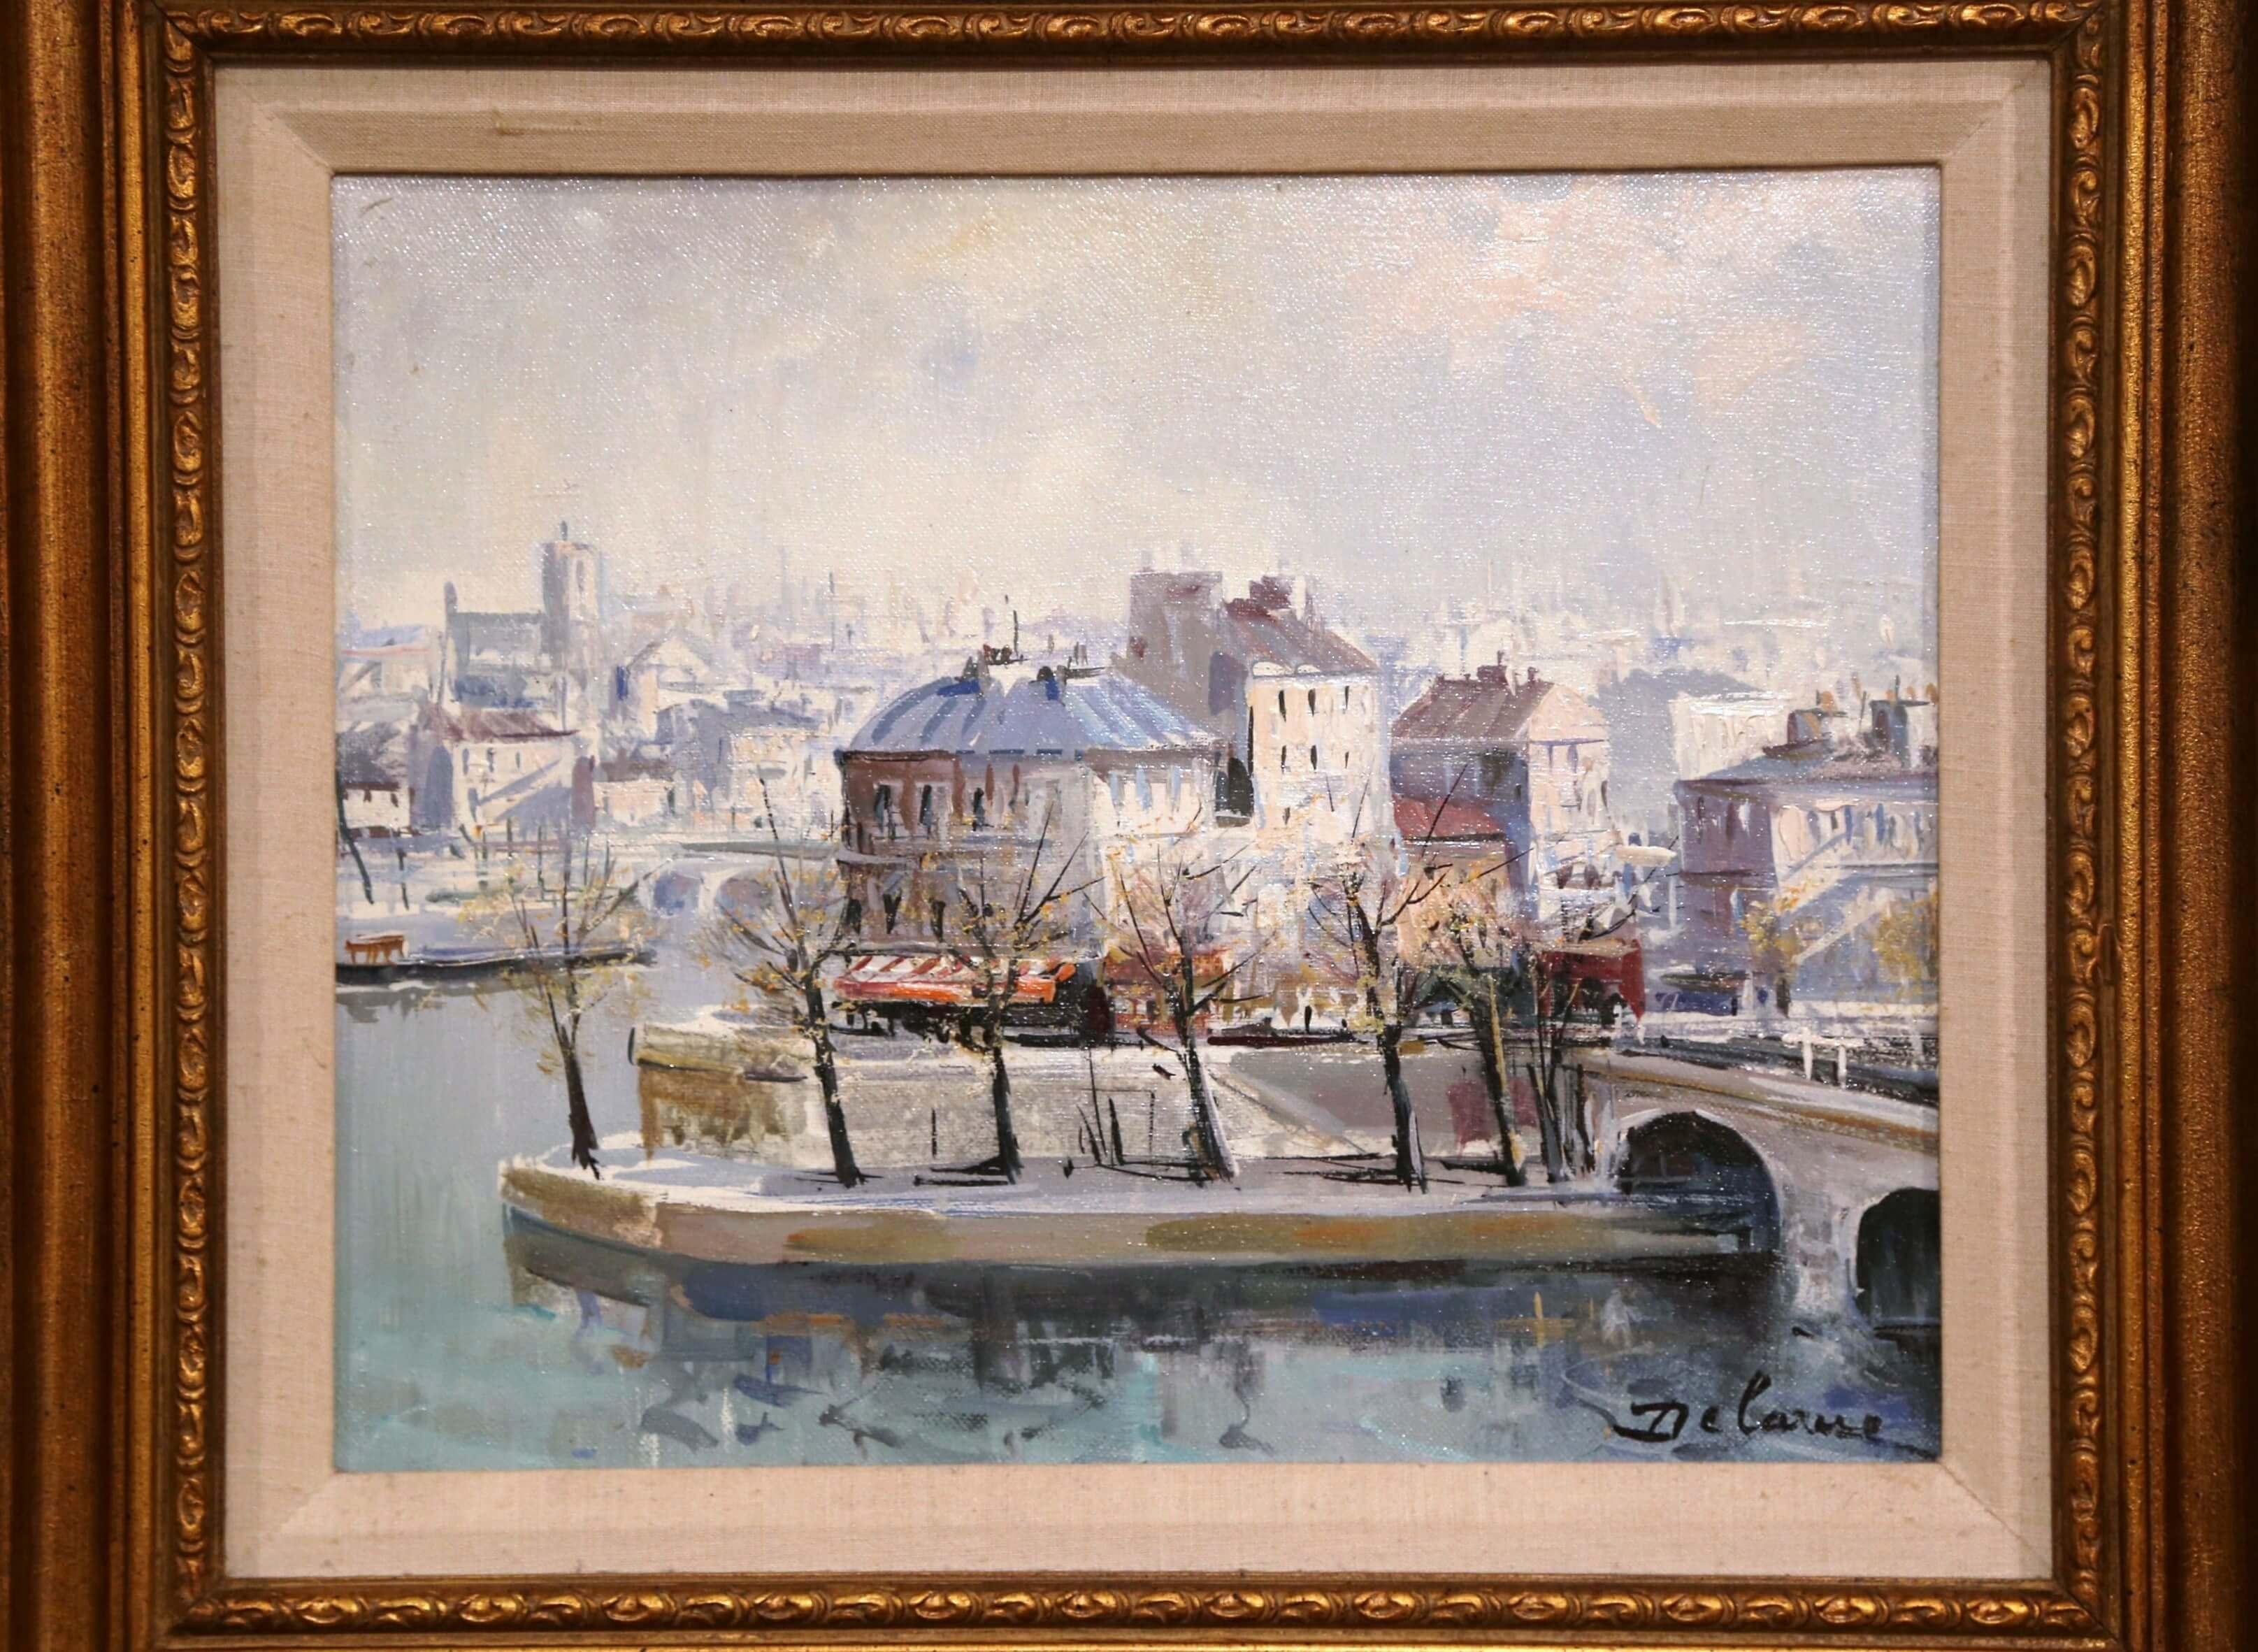 Gardez une vue de Paris dans votre maison avec cette peinture à l'huile sur toile du peintre français Lucien Delarue (vers 1970). Présentée dans un cadre doré et sculpté, cette peinture architecturale détaillée est signée par l'artiste dans le coin